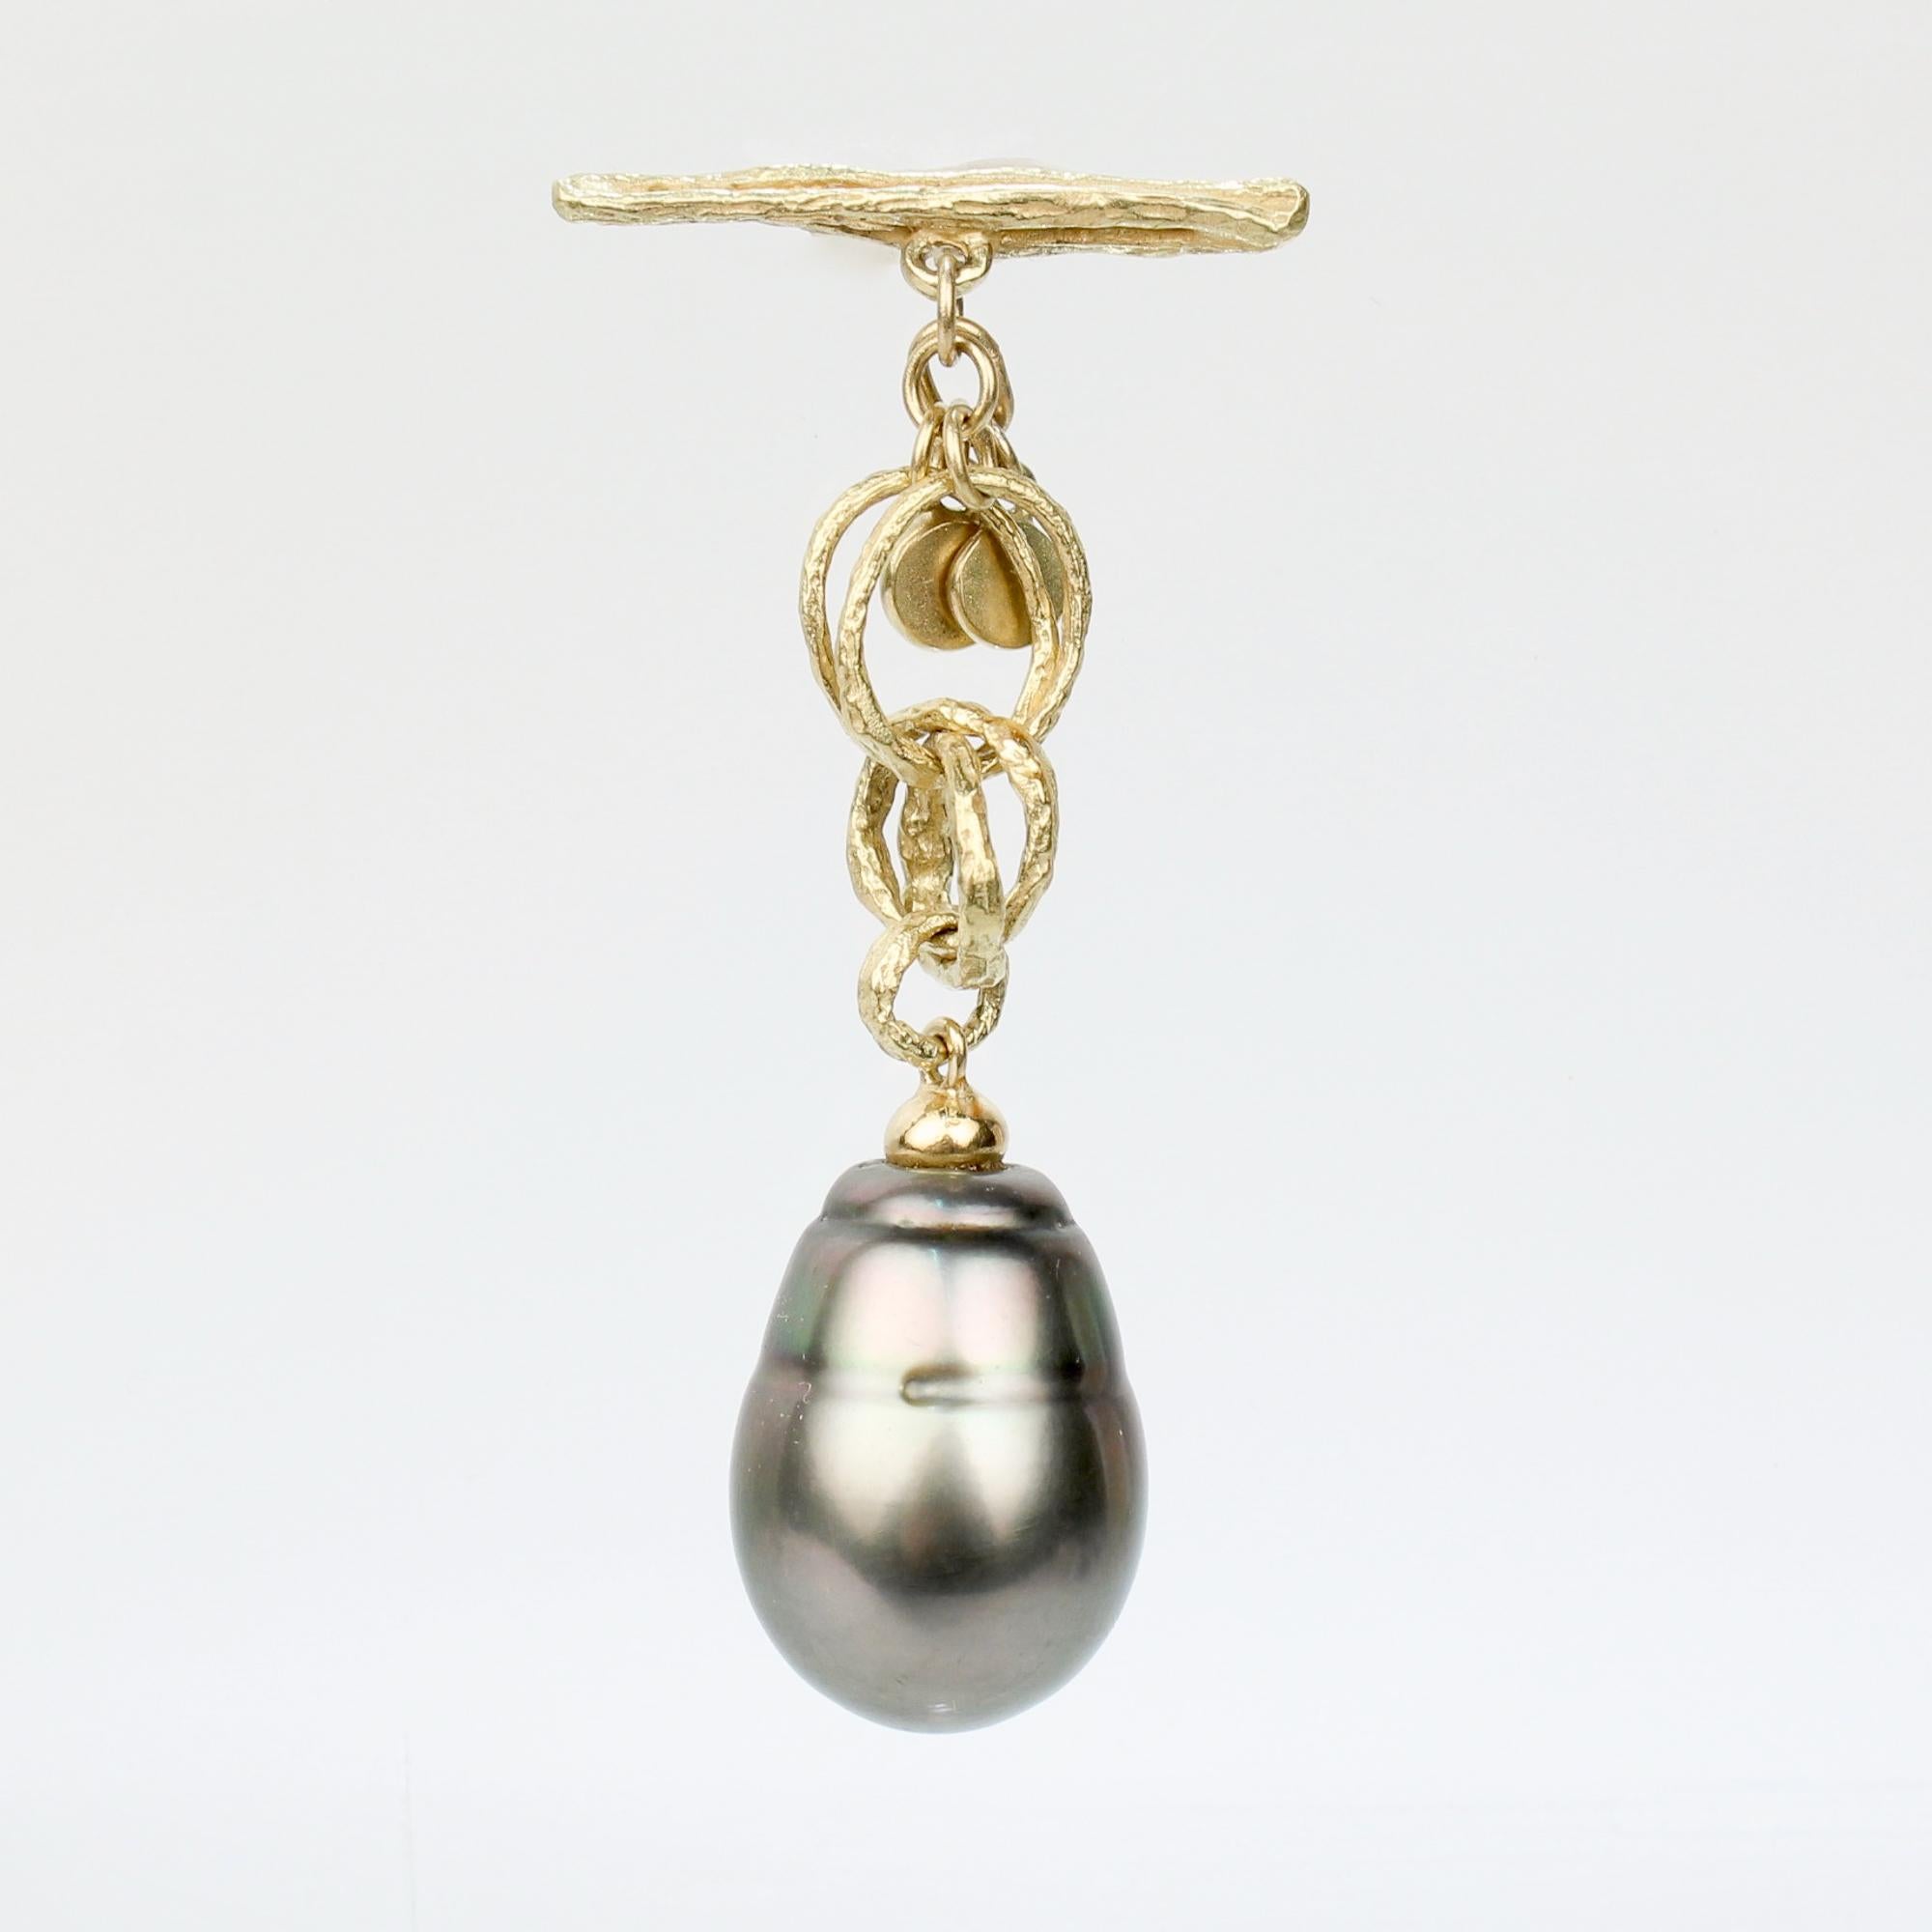 Bouton de revers ou porte-bonheur en or fin et perle de Tahiti baroque.

En or 18k.

Il s'agit d'une barre à bascule en or reliée à plusieurs anneaux en or entrelacés et se terminant par une grande perle de Tahiti de forme baroque.

Tout simplement